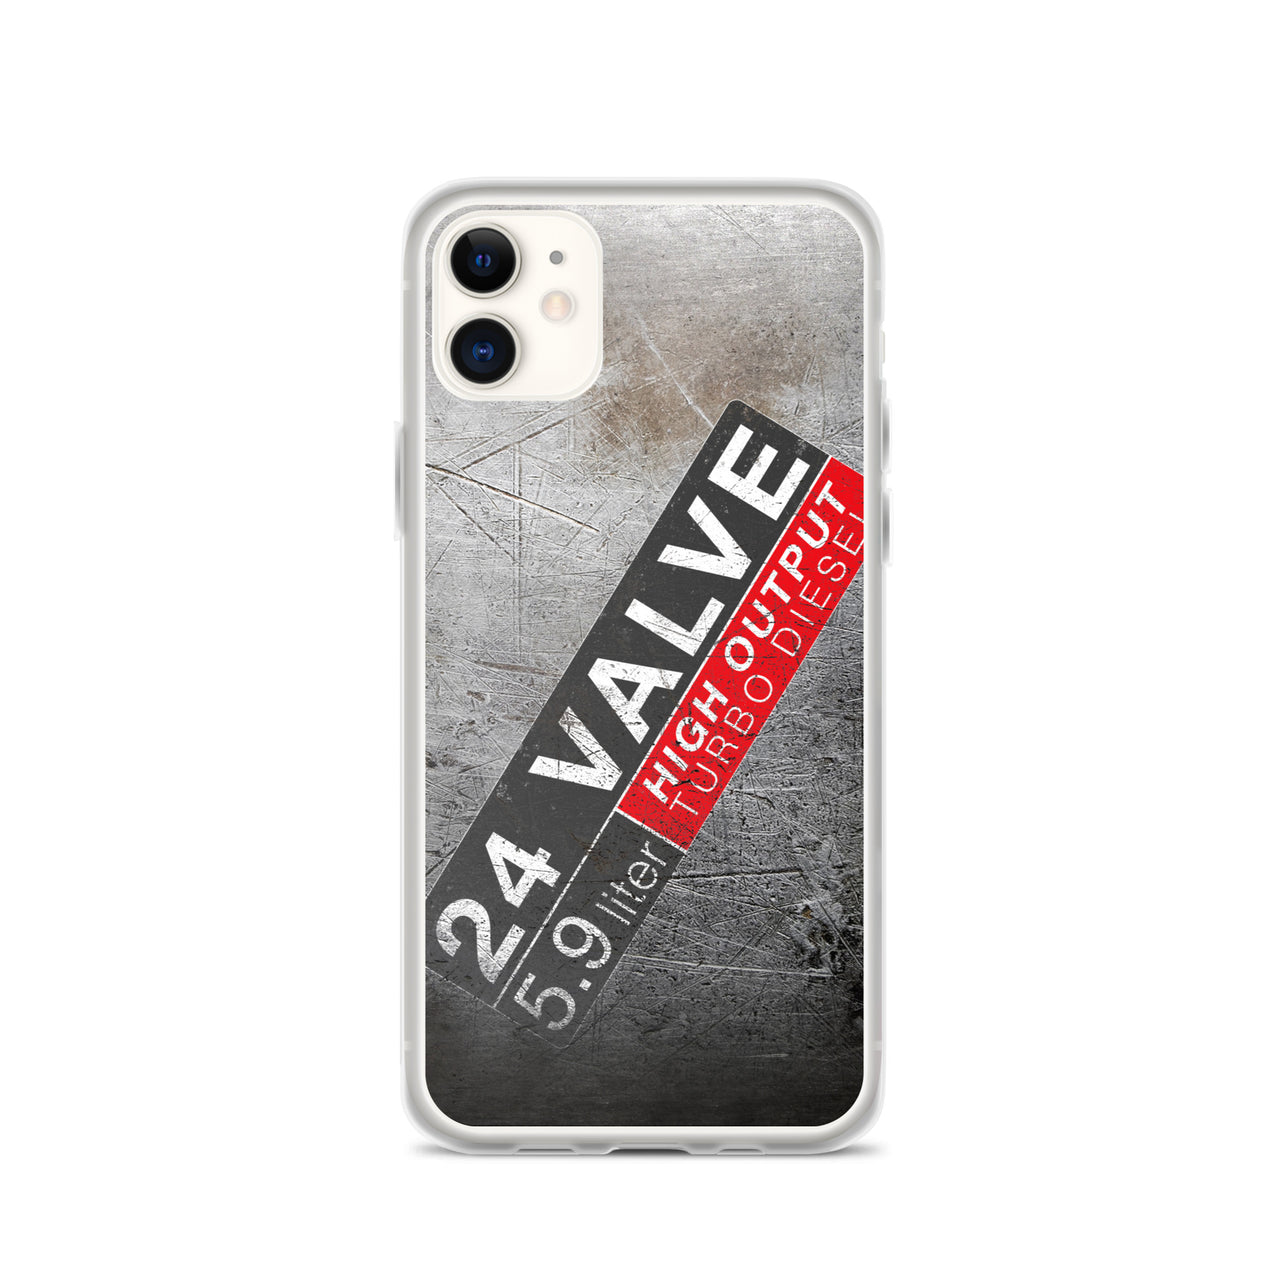 24 Valve Cummins Phone case for iPhone